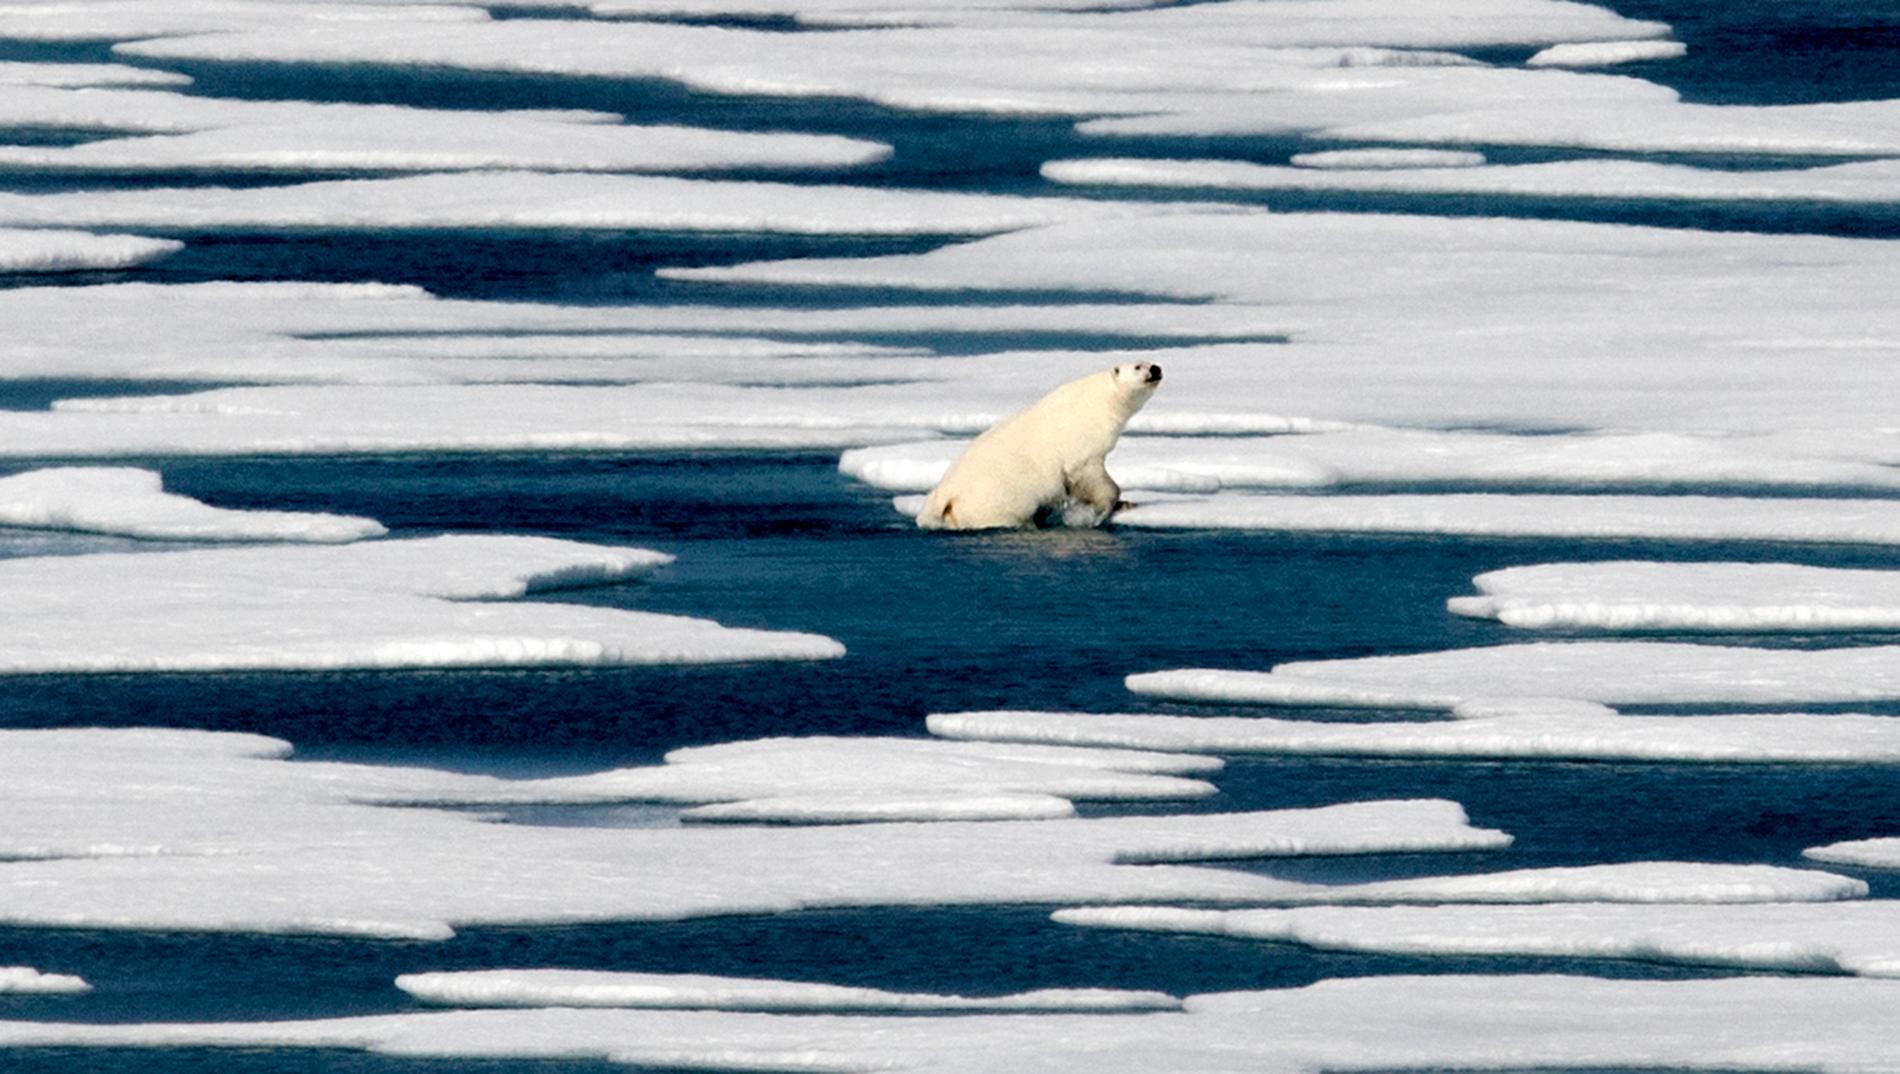 Smältande isar tros vara anledningen till att flera isbjörnar samlats utanför Ryrkajpij. Björnen på bilden kravlar sig upp på ett isblock längre västerut, i den kanadensiska delen av Arktis. Arkivbild.